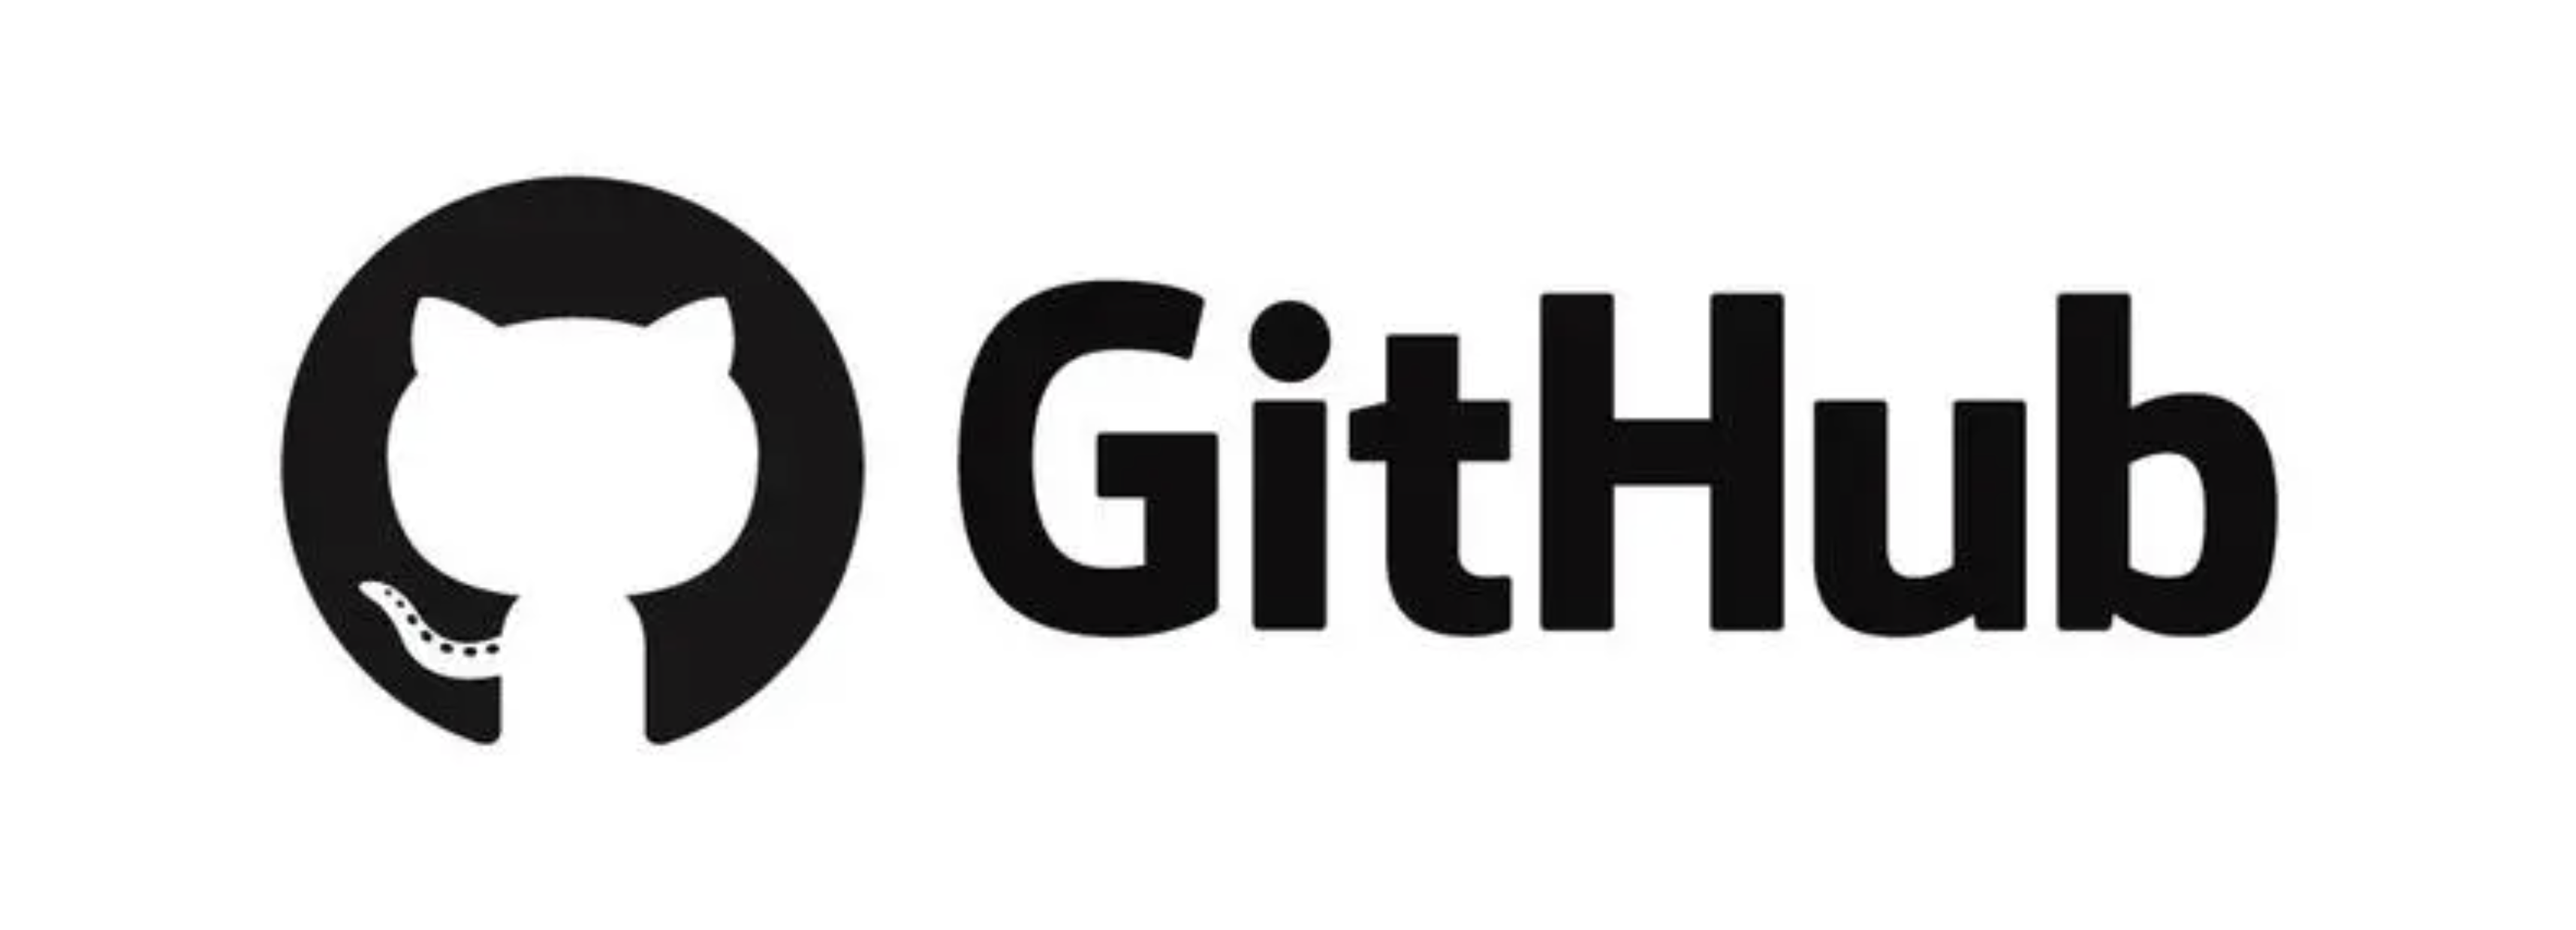 一个程序员日常工作中对于Github的一些另类用法